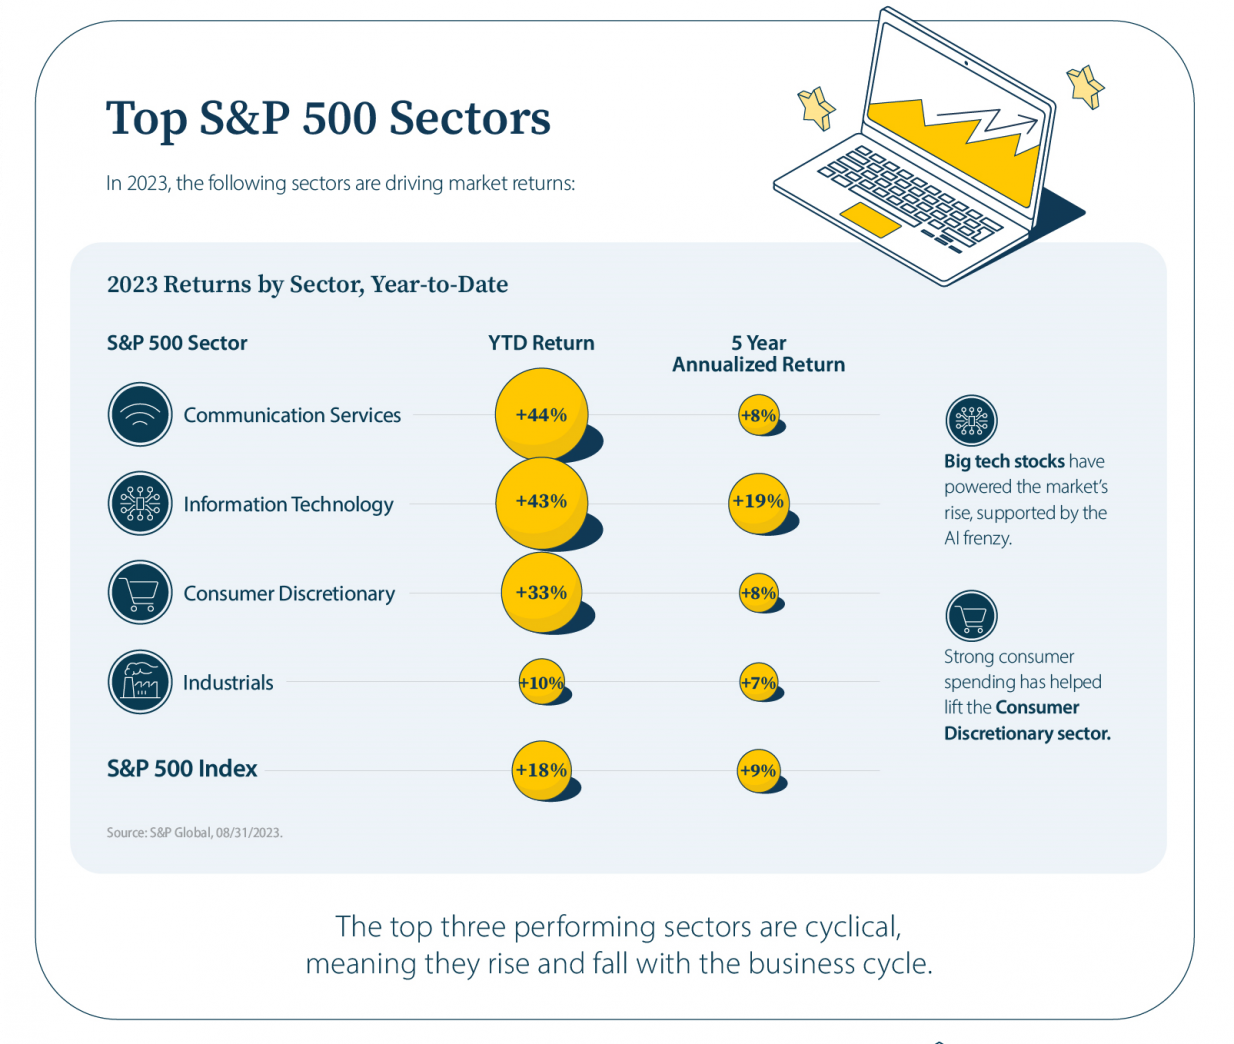 Top S&P 500 sectors in 2023*